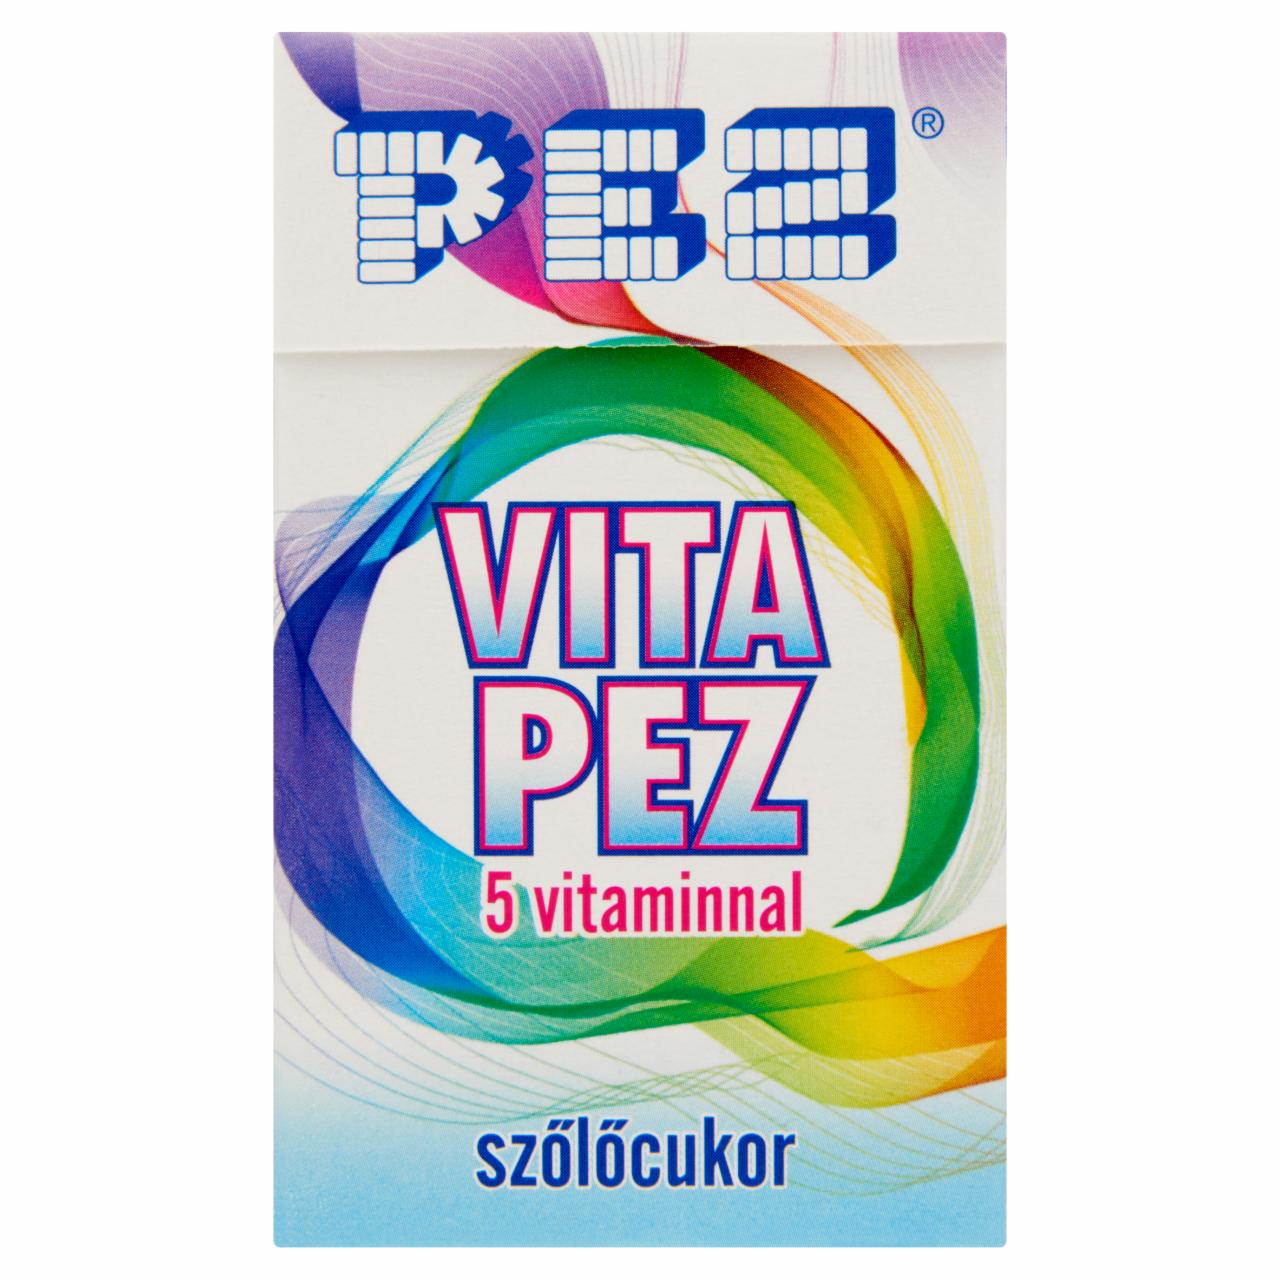 Képek - Pez Vita Pez tutti-frutti ízesítésű szőlőcukor 5 vitaminnal 30 g